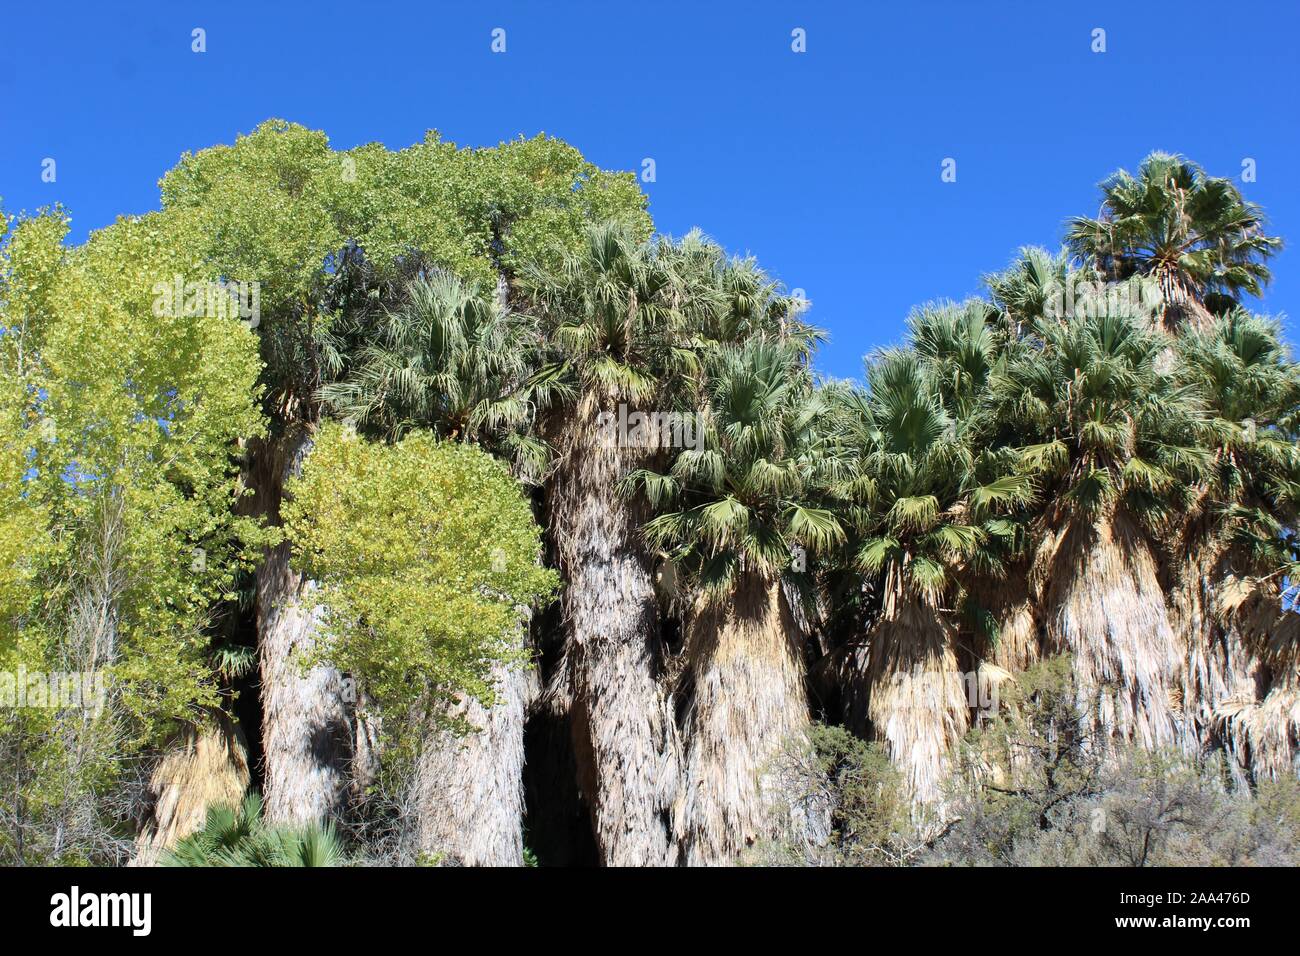 Peuplier de l'Printemps dans Joshua Tree National Park, Colorado naturelles rares habitats désertiques adaptées à la Californie, Palmier Washingtonia filifera. Banque D'Images